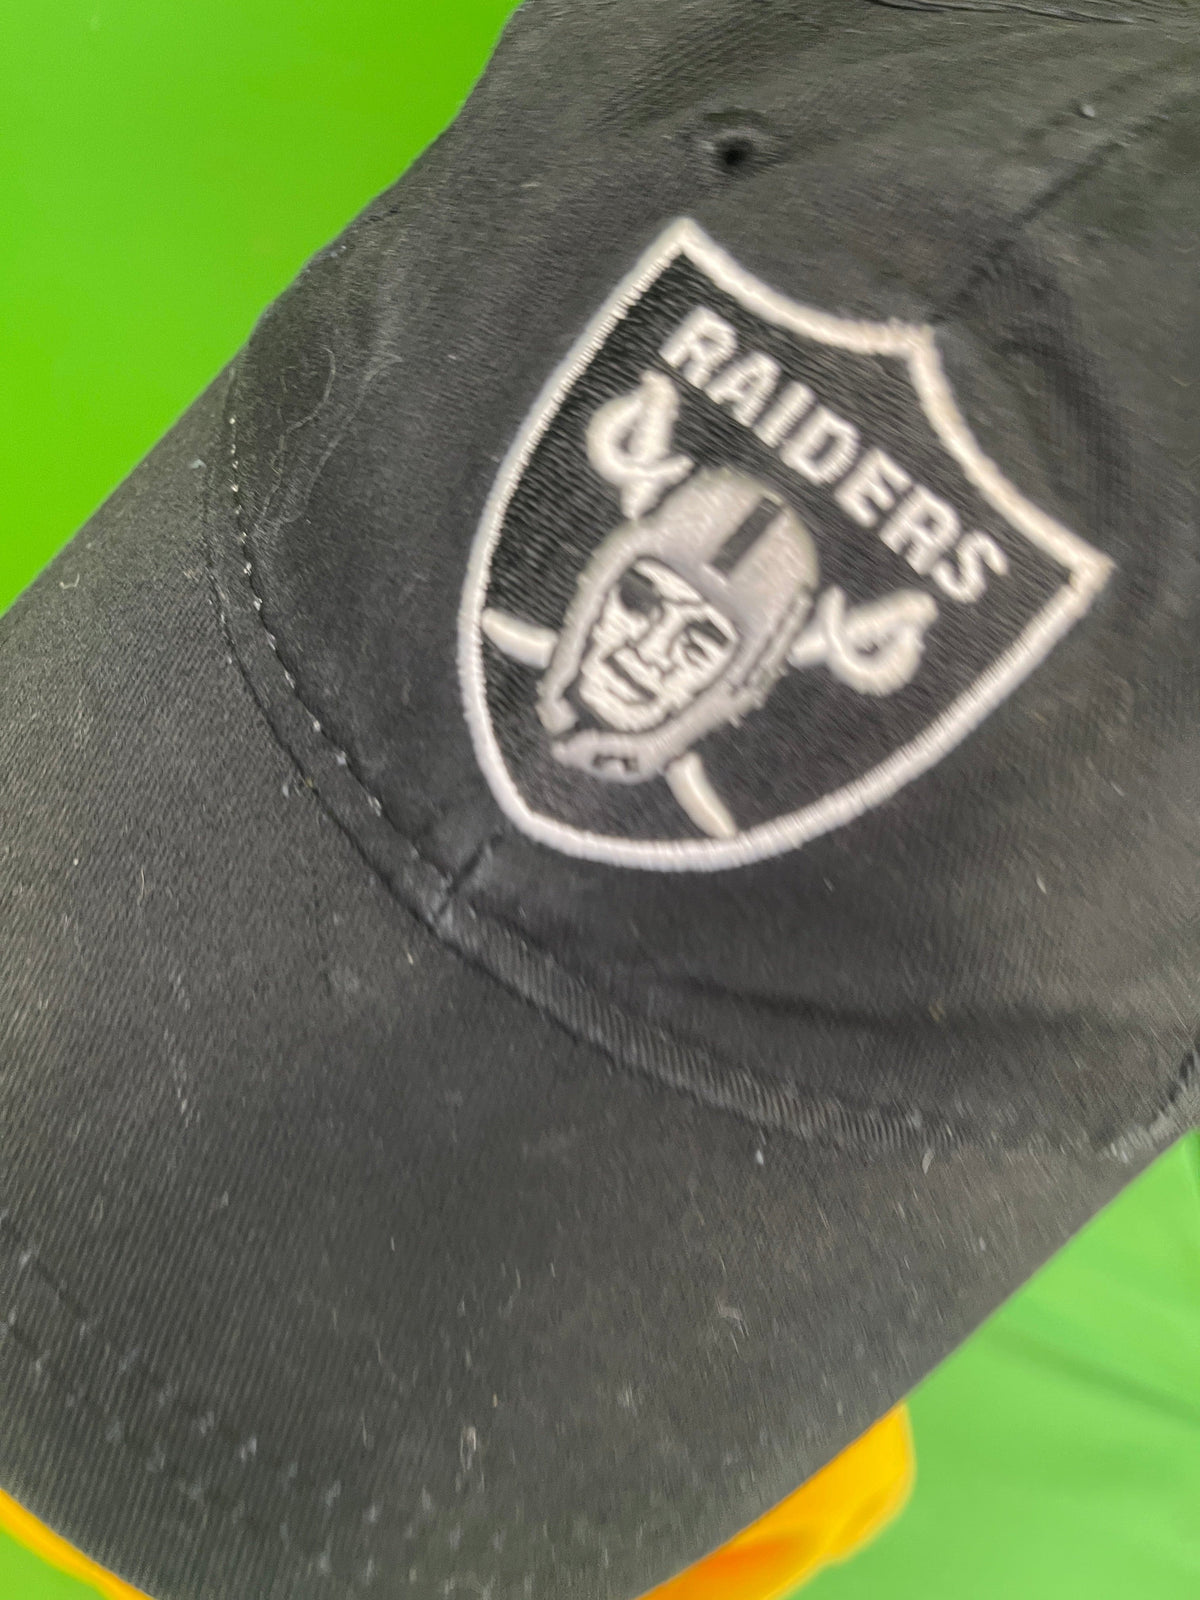 NFL Los Angeles Raiders Reebok Infant / Toddler Hat / Cap